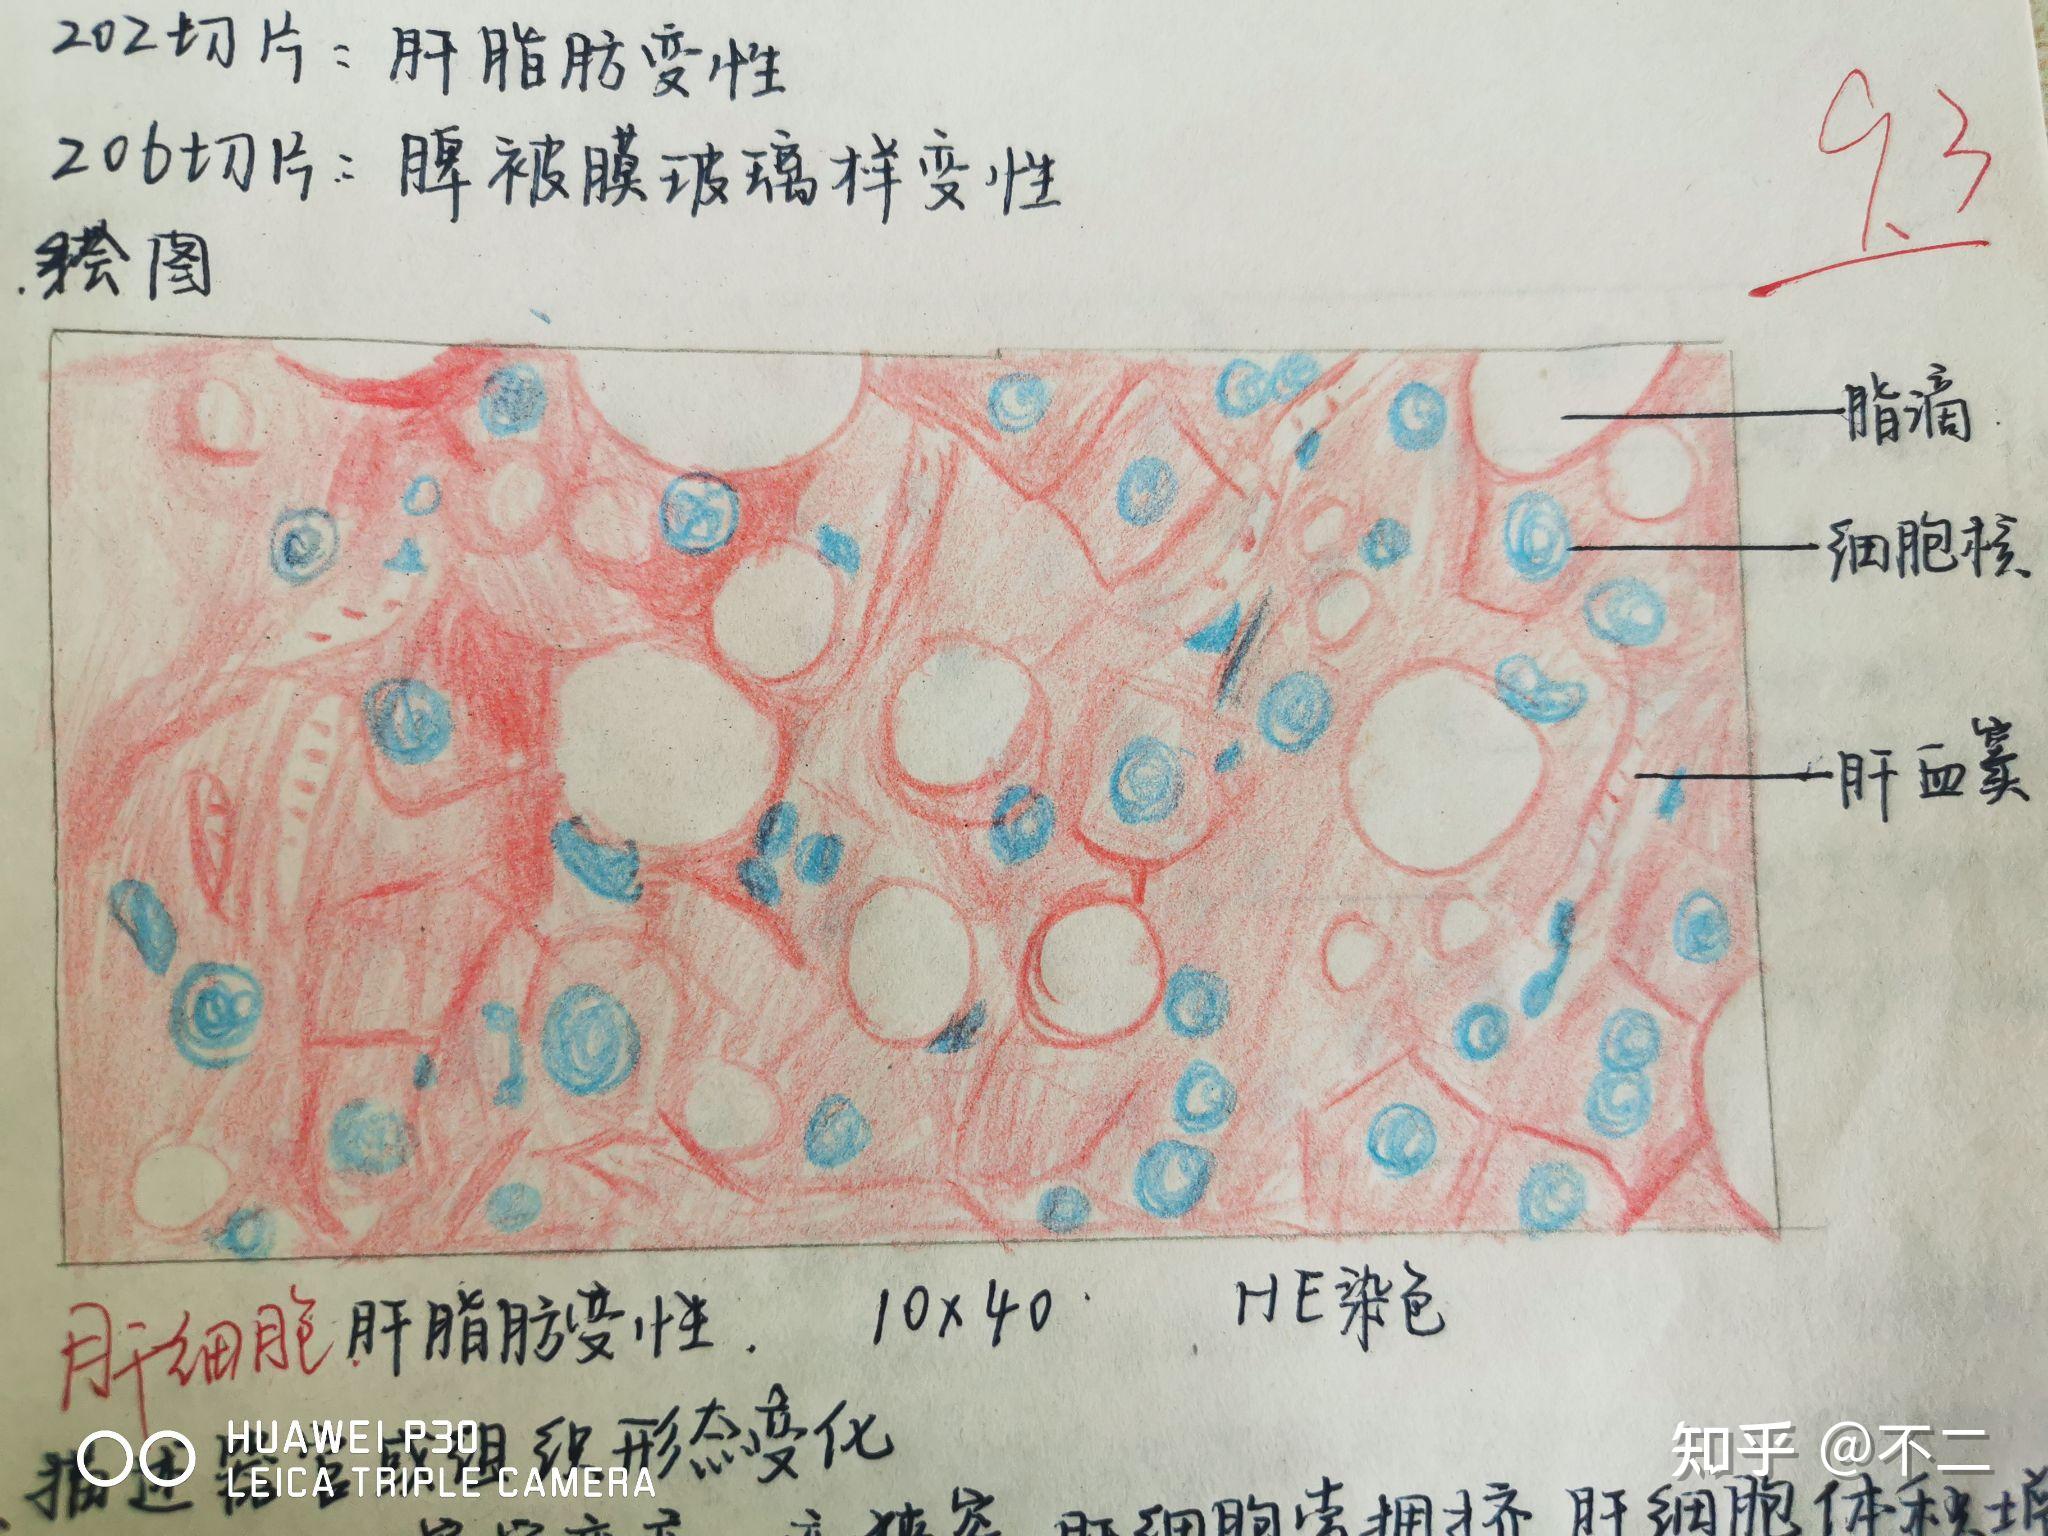 2肝细胞脂肪变性1肉芽组织持续更新病理红蓝铅笔手绘图来啦!